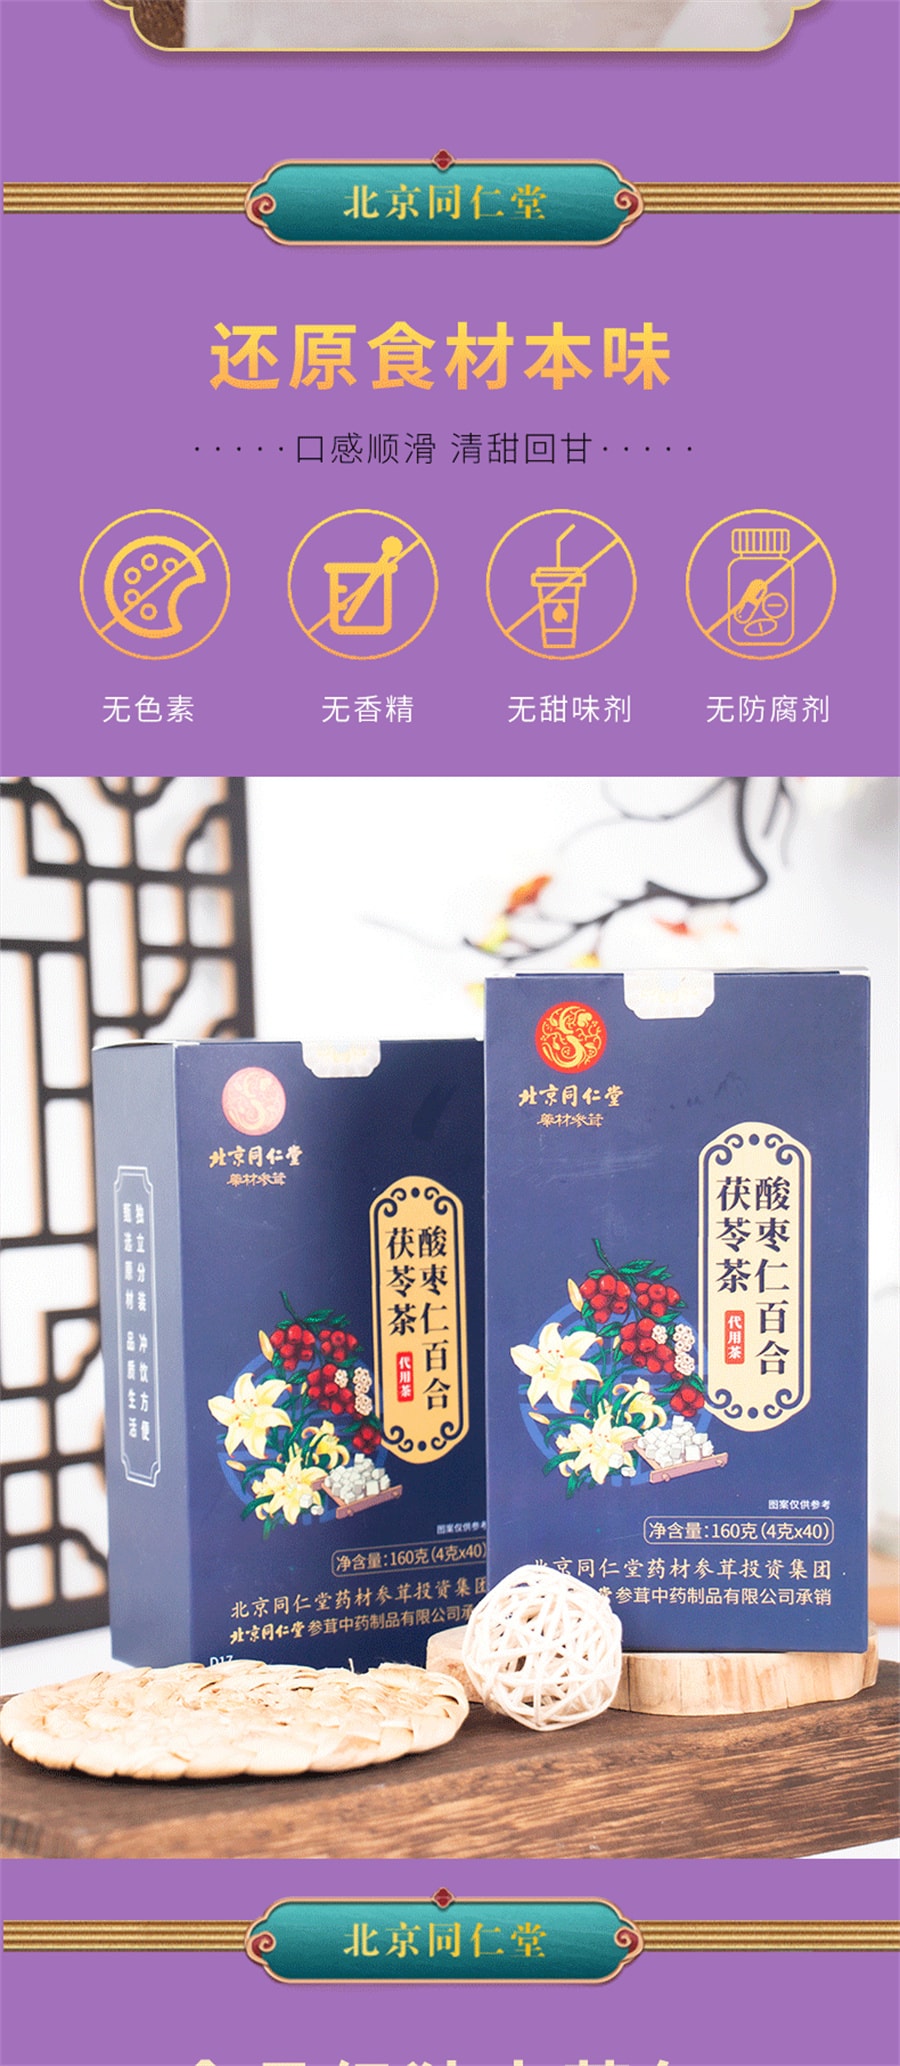 北京同仁堂 酸棗仁百合茯苓茶睡眠茶晚安茶 茯苓酸棗仁茶 160g/盒(4g*40小包)